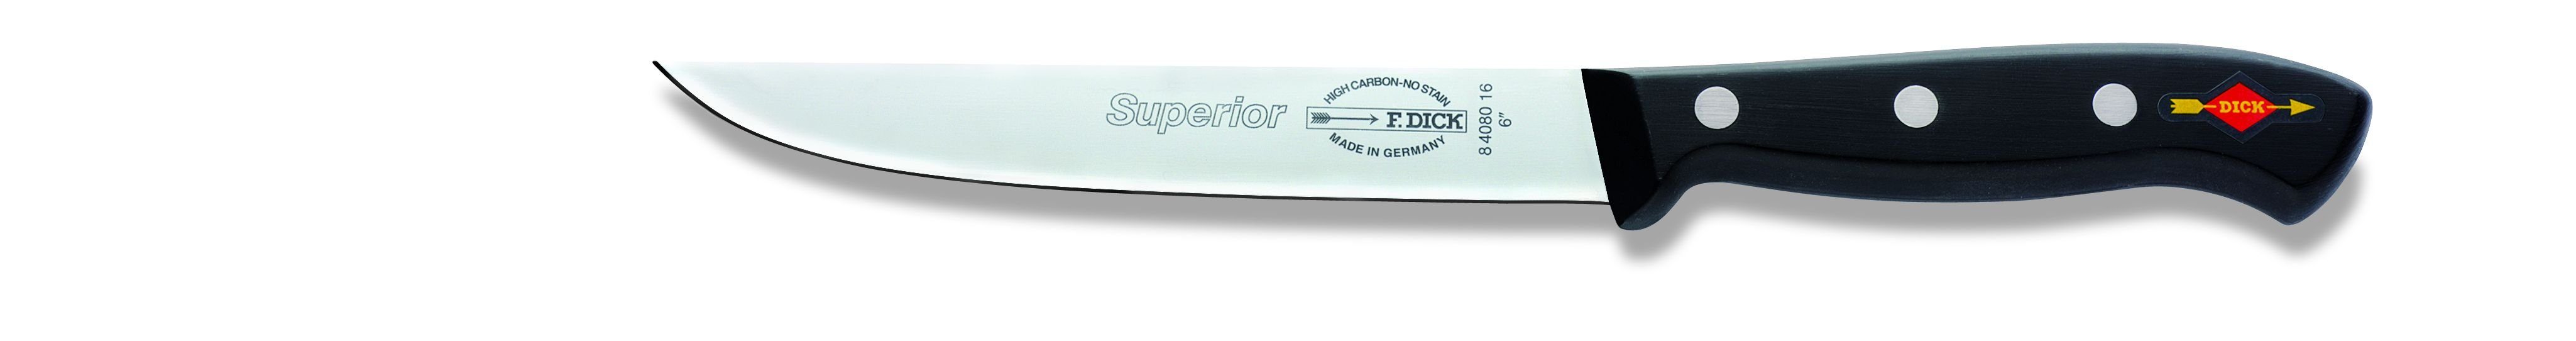 DICK Superior cm Kochmesser, F. F. DICK Küchenmesser, Kochmesser (Klinge 16